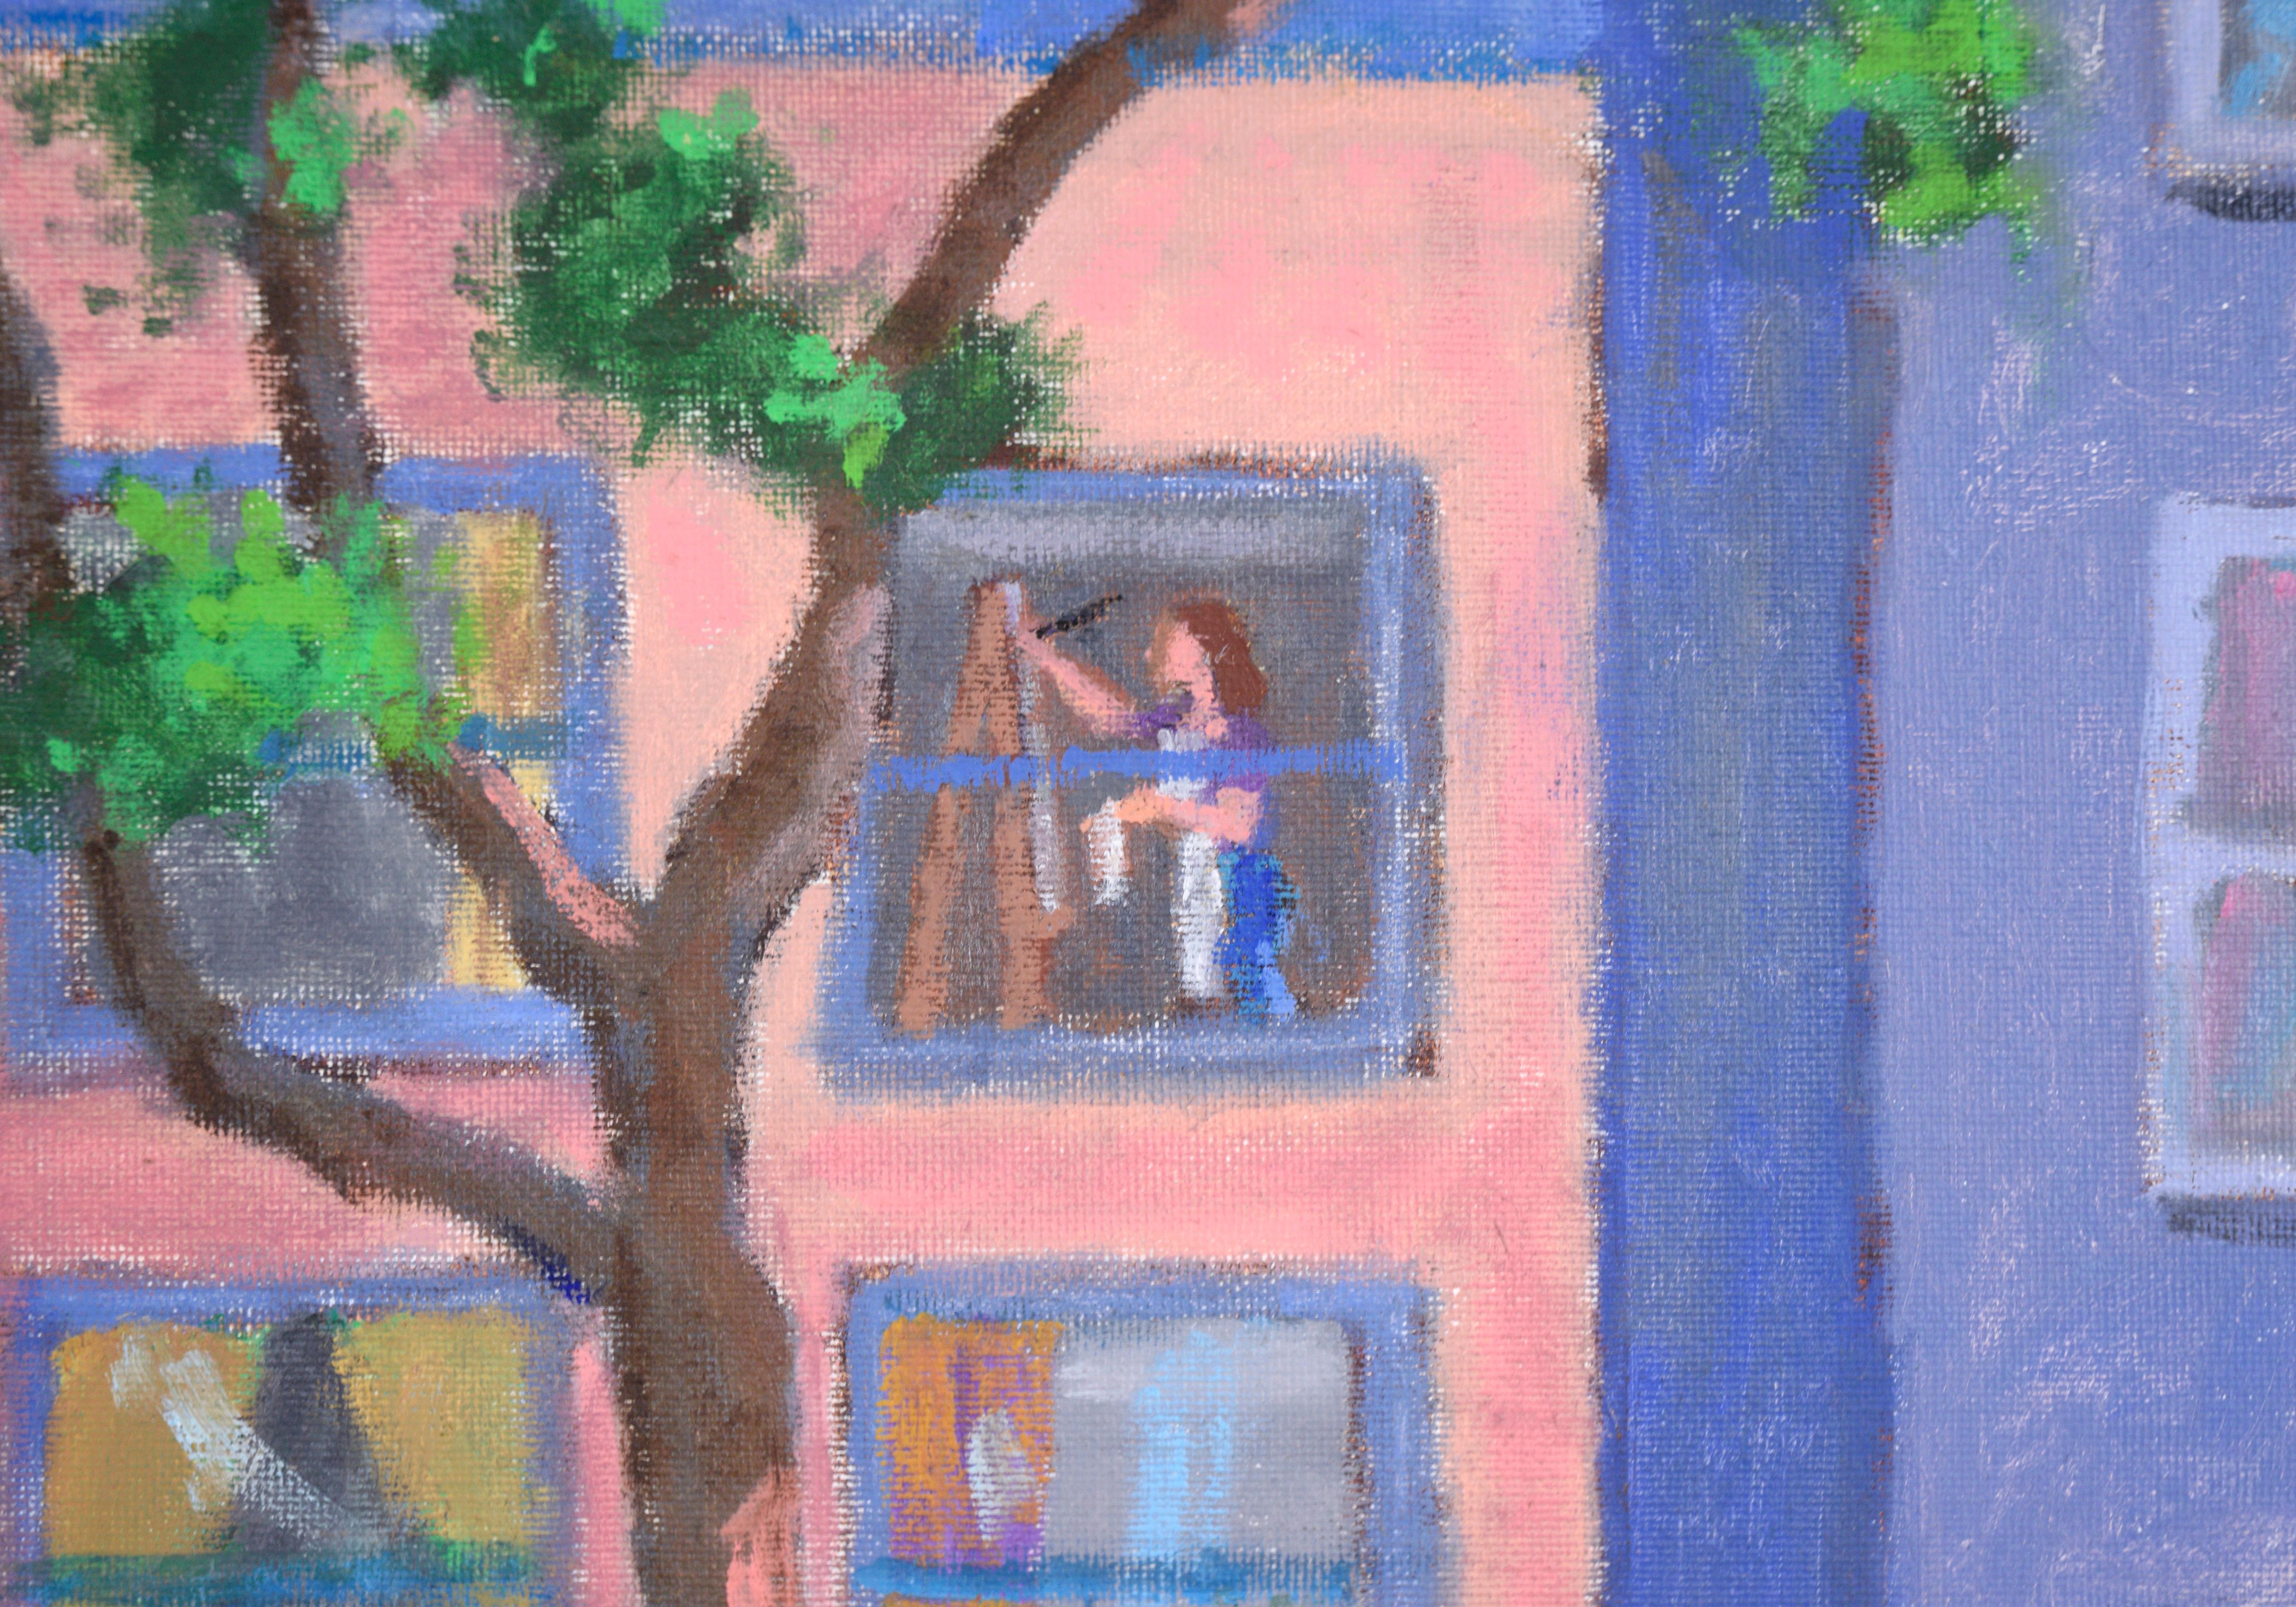 „Garage Sale“ San Francisco Stadtlandschaft in Öl auf Künstlerkarton

Lebhafte Straßenszene von Hirschel Rabinov (Amerikaner, 1921-2012). Vor einem rosafarbenen Haus in San Francisco versammeln sich Menschen, die ihrem Alltag nachgehen. Es findet